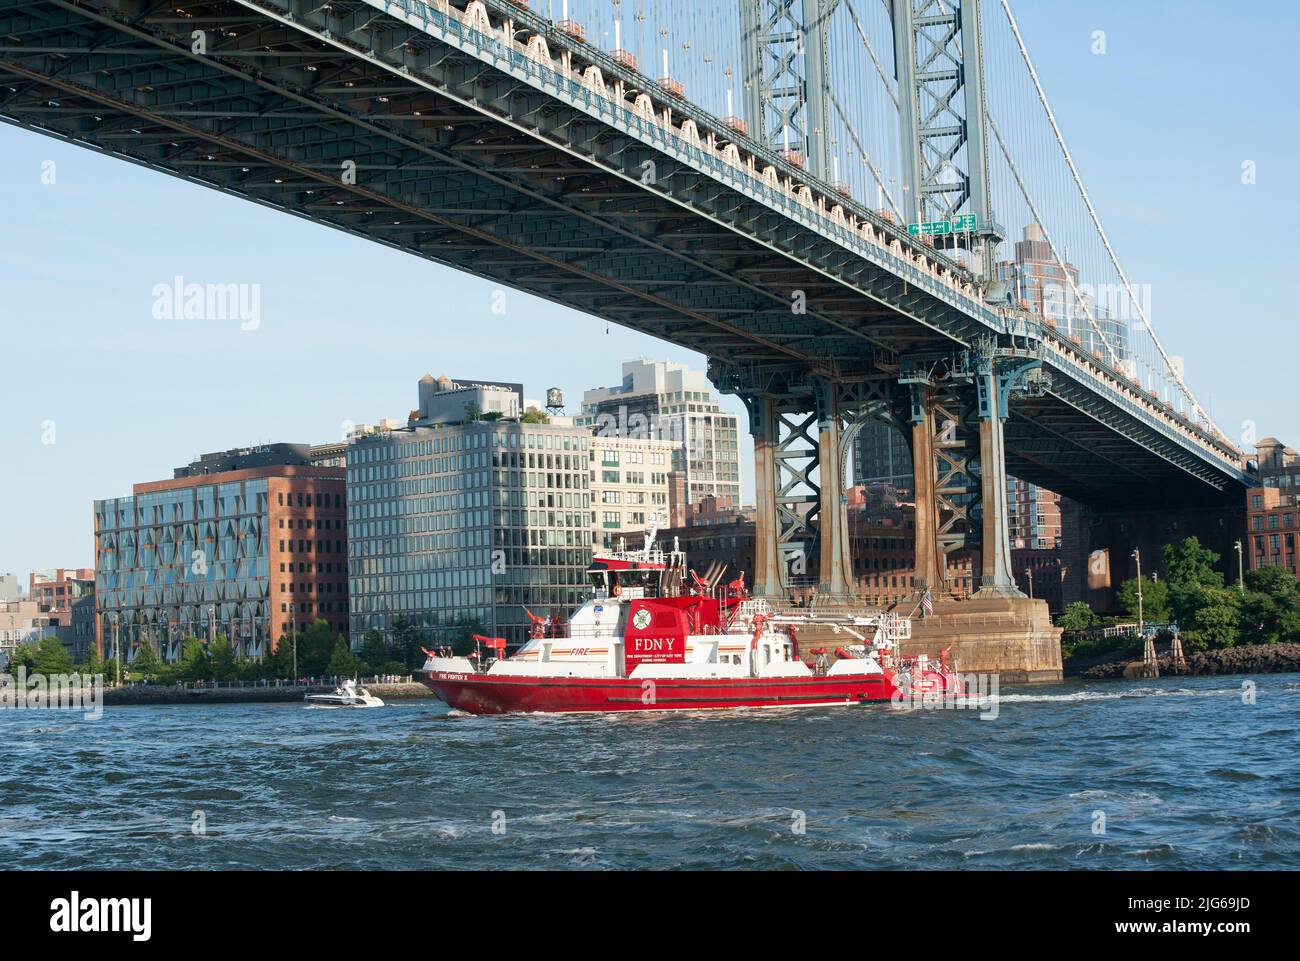 Das Feuerwehrboot der FDNY, Firefighter II, passiert unter der Manhattan Bridge, die den East River überspannt. Firevigher II wurde im Dezember 2010 in Dienst gestellt. I Stockfoto